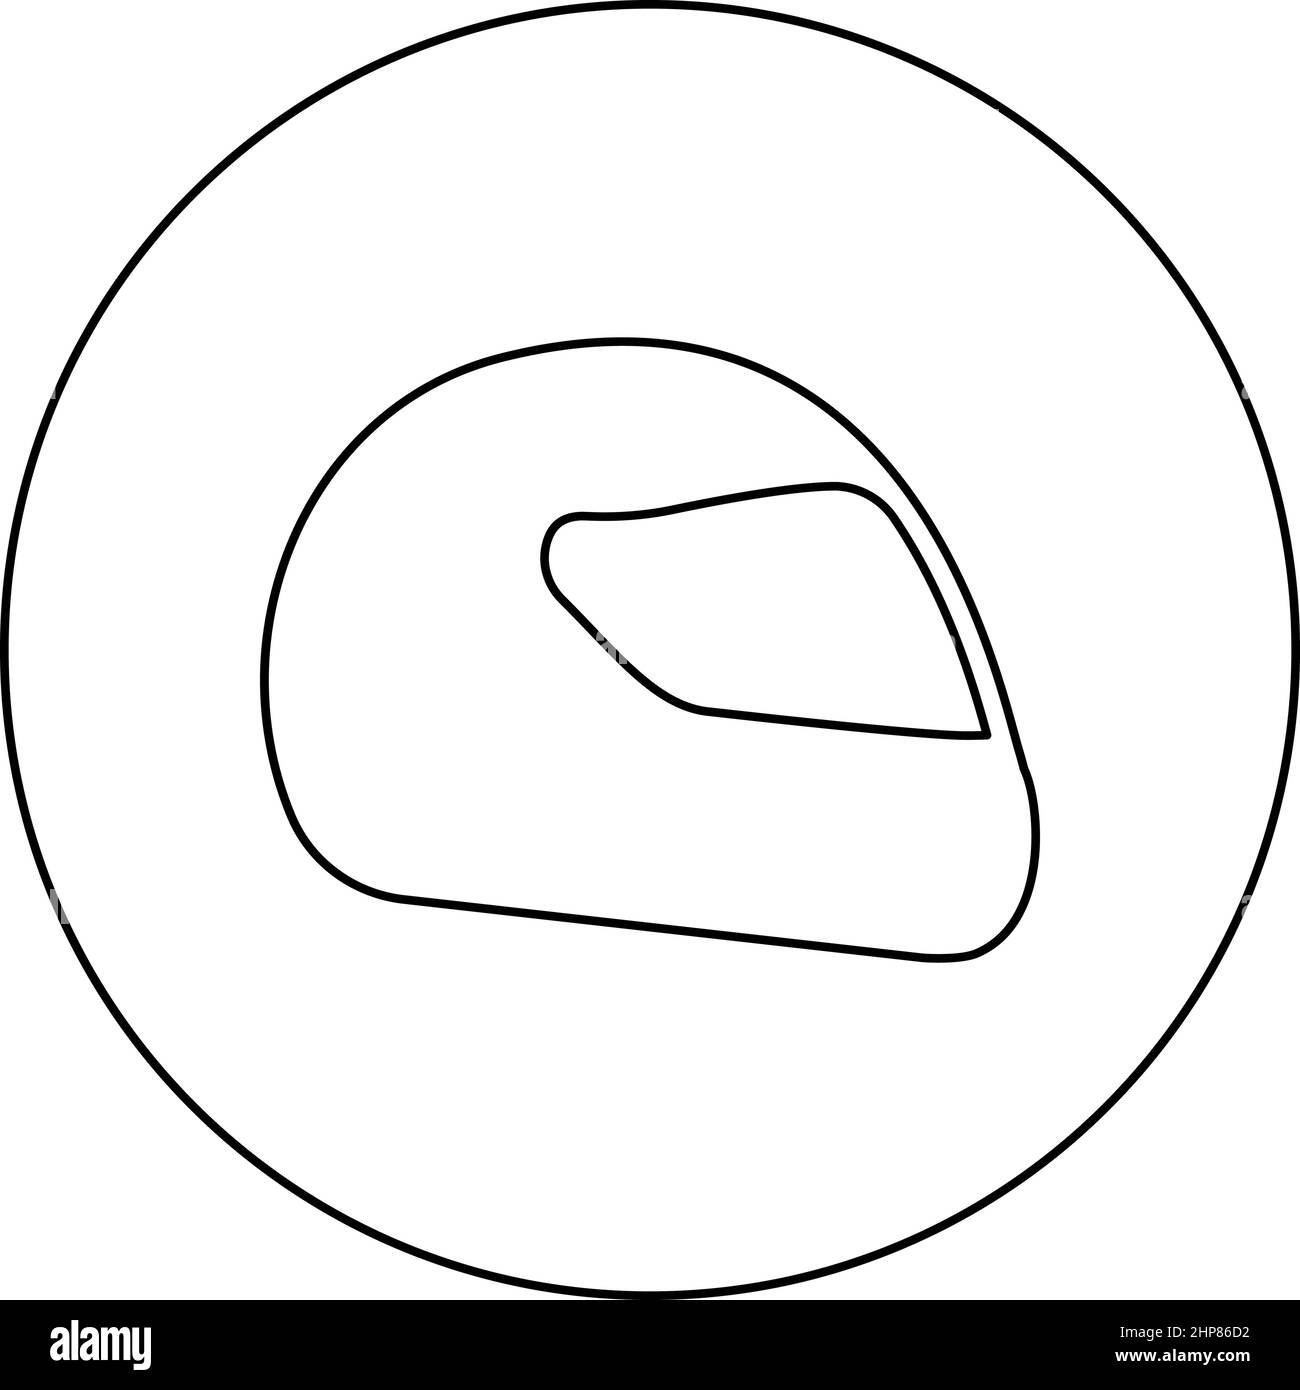 Helm Motorrad Rennsport Sport Symbol im Kreis rund schwarz Farbe Vektor Illustration Bild Umriss Kontur Linie dünnen Stil Stock Vektor